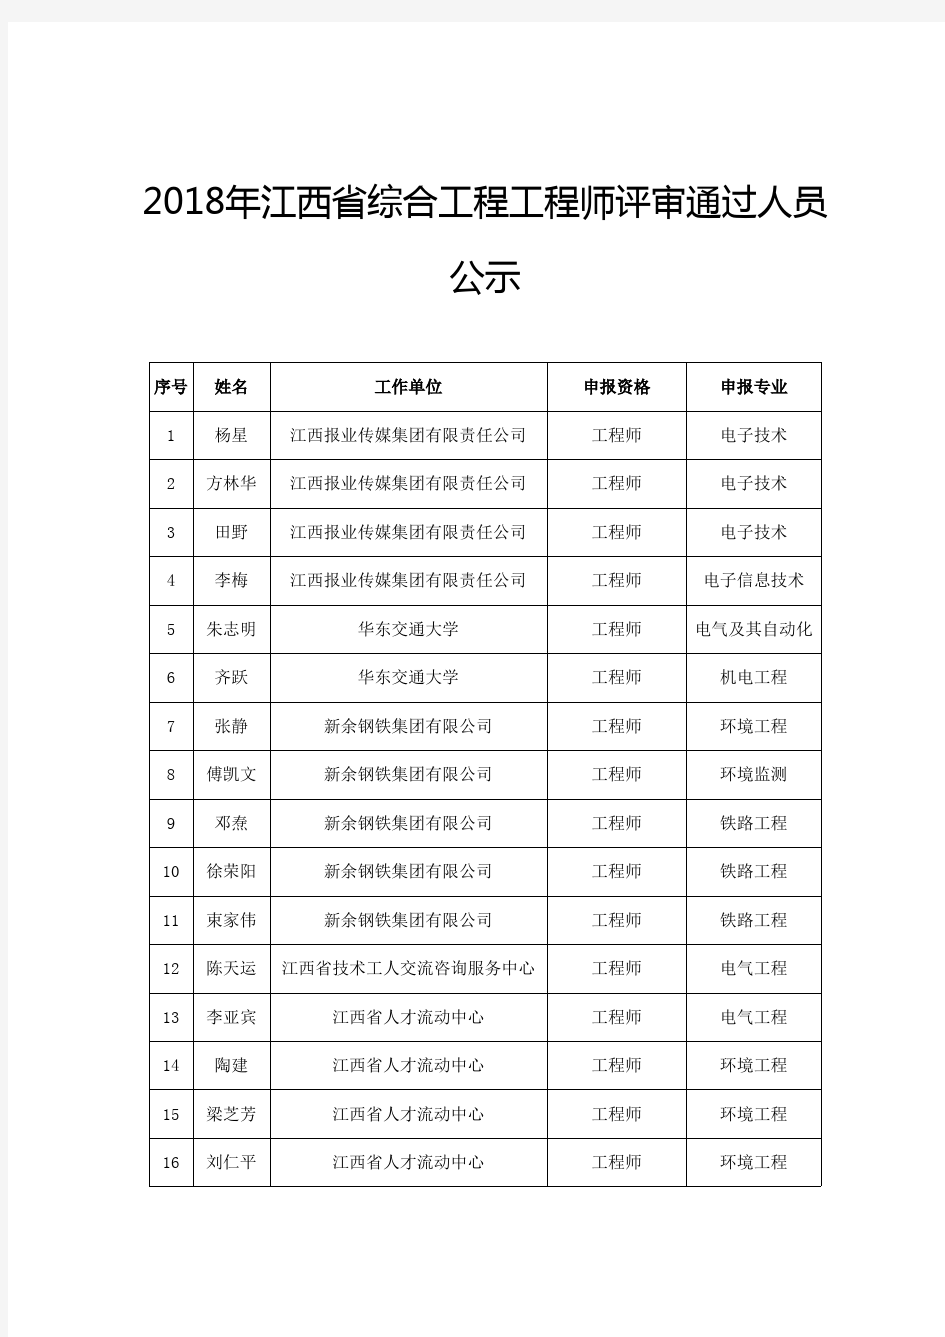 2018年江西省综合工程工程师评审通过人员公示041019133343